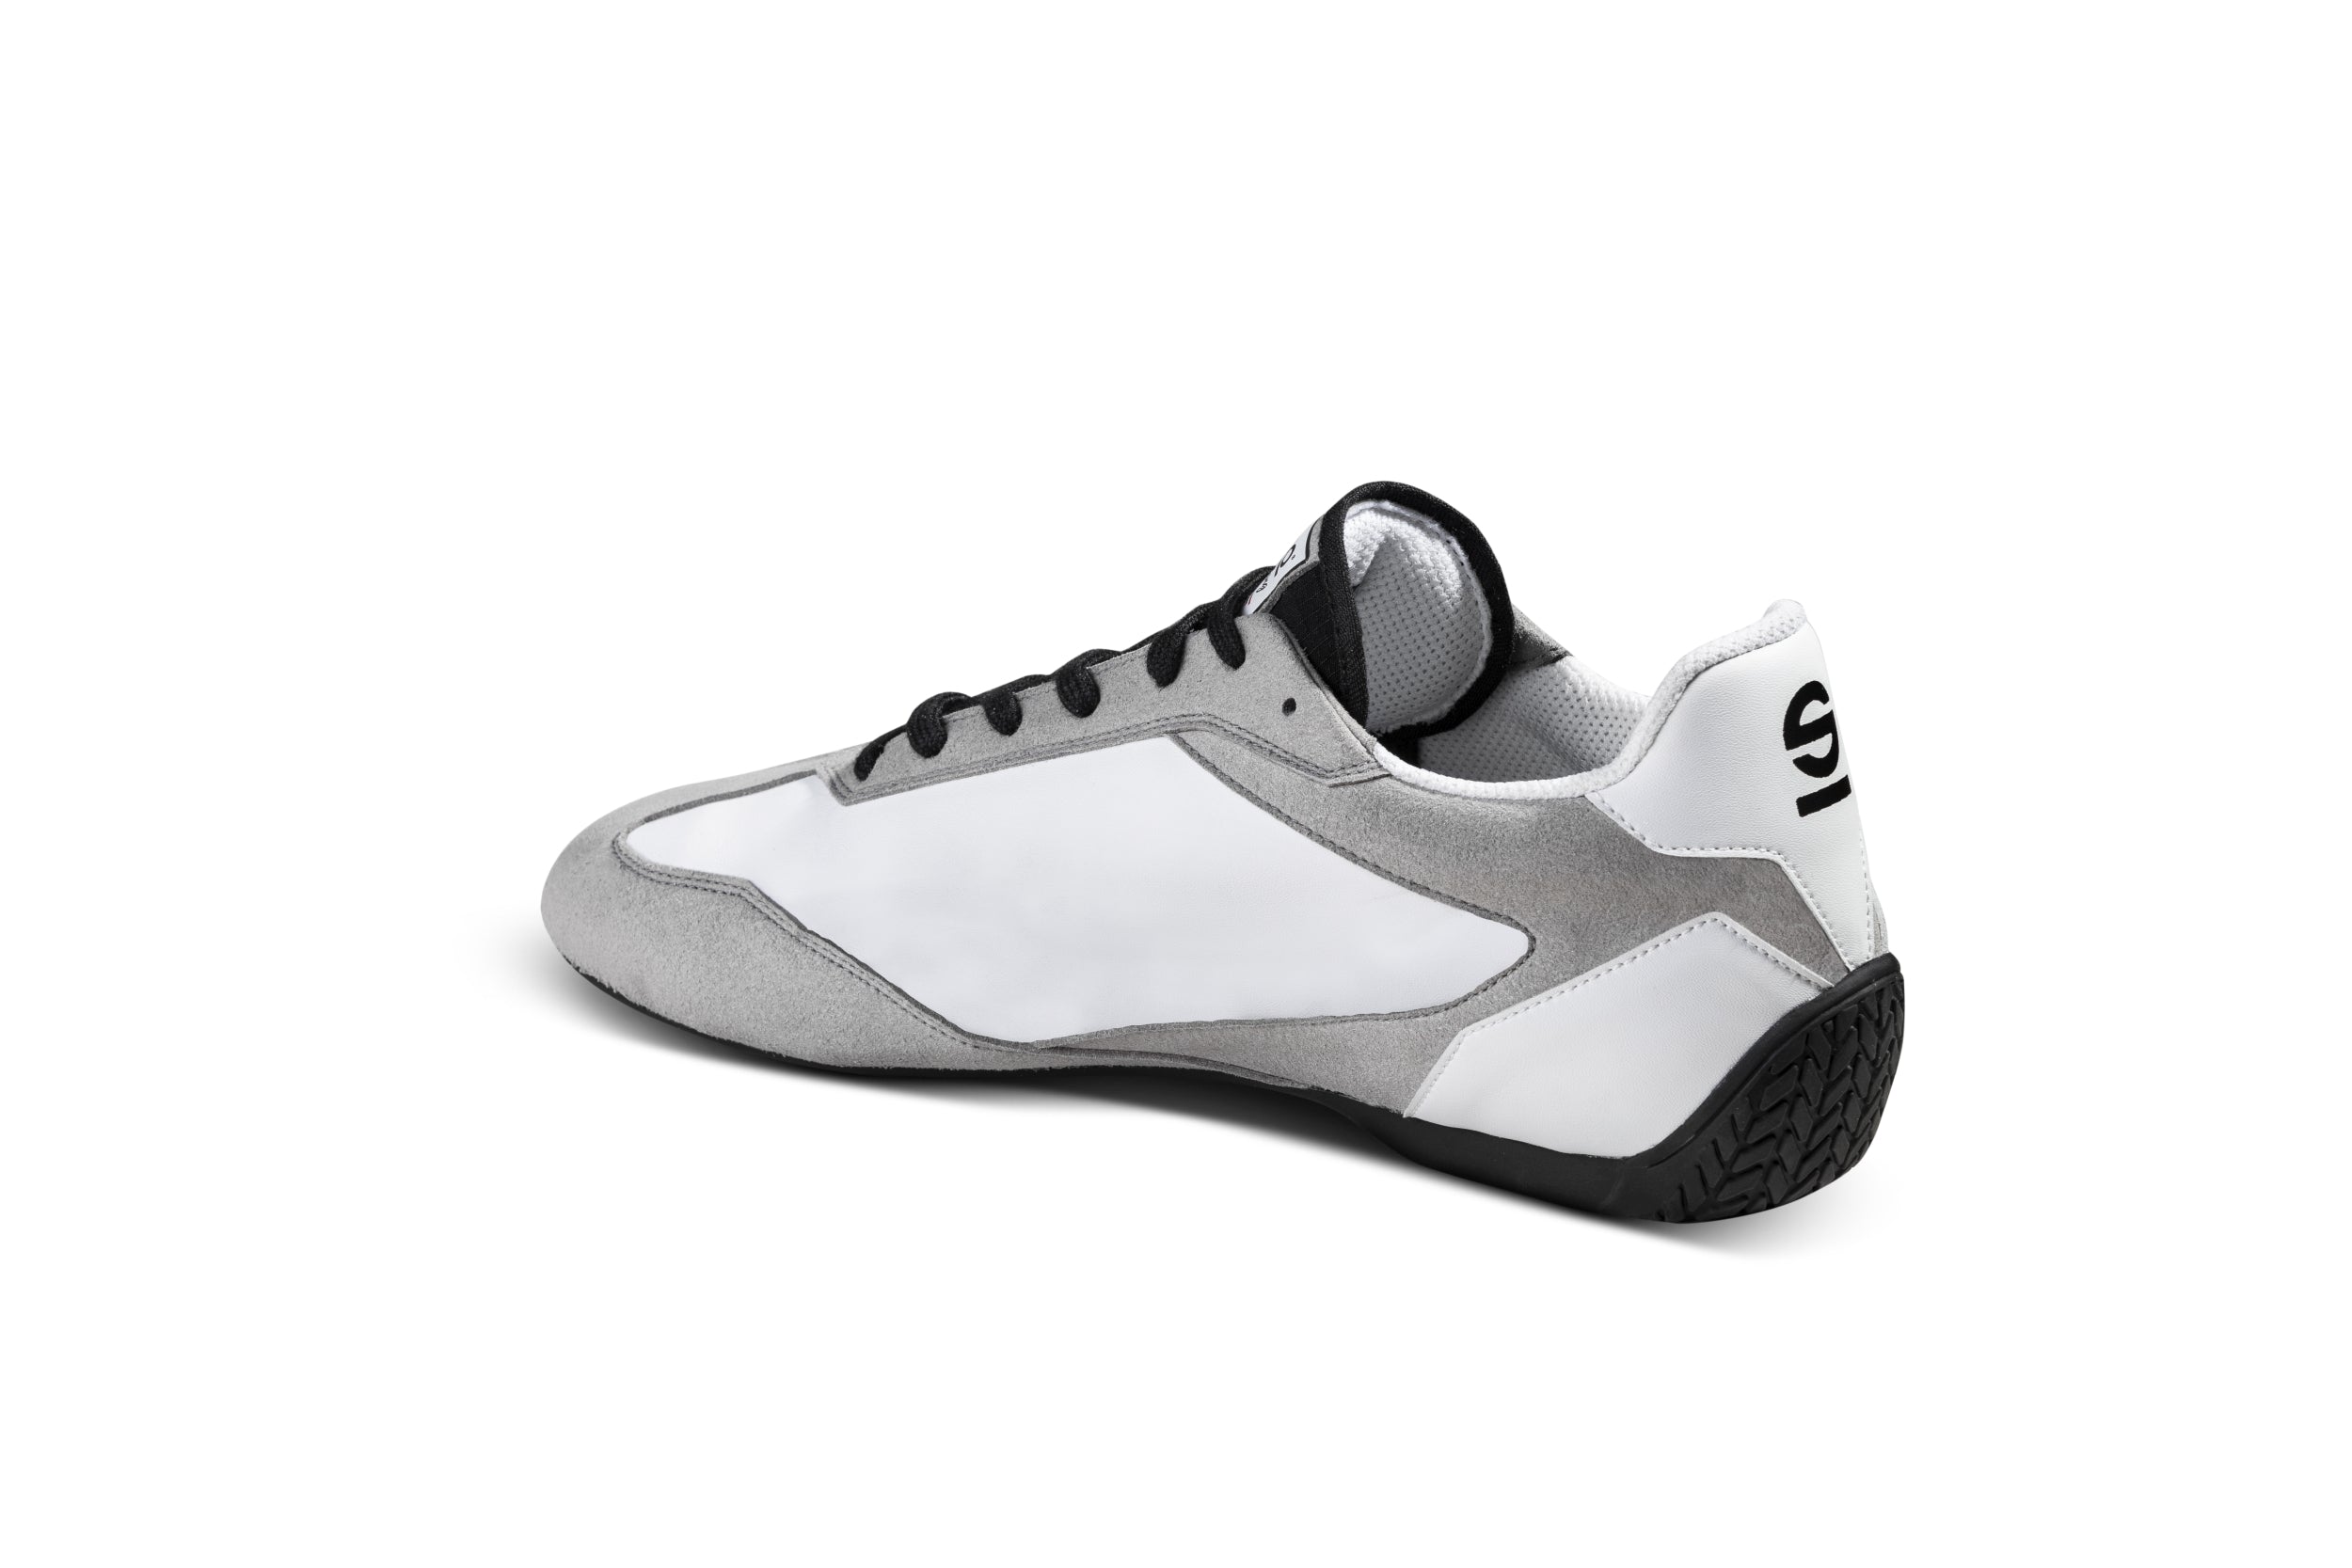 SPARCO 0012A737BINR S-DRIVE Shoes, white/black, size 37 Photo-1 